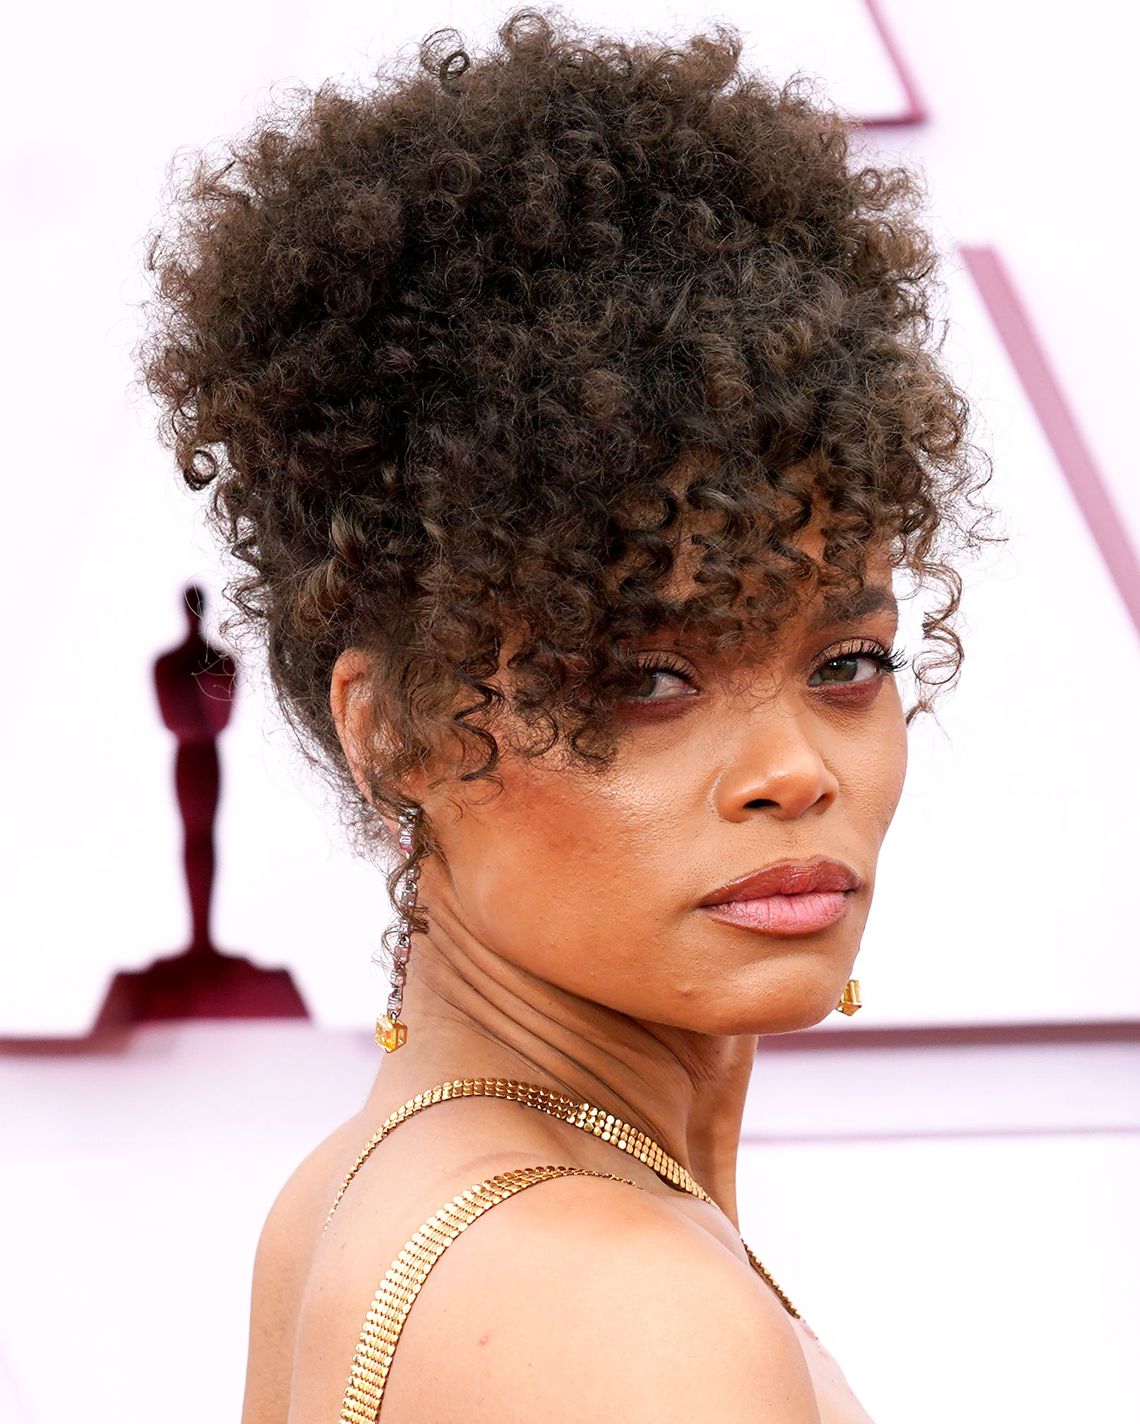 Oscars 2021: Best Beauty, Hair, Makeup at the Academy Awards